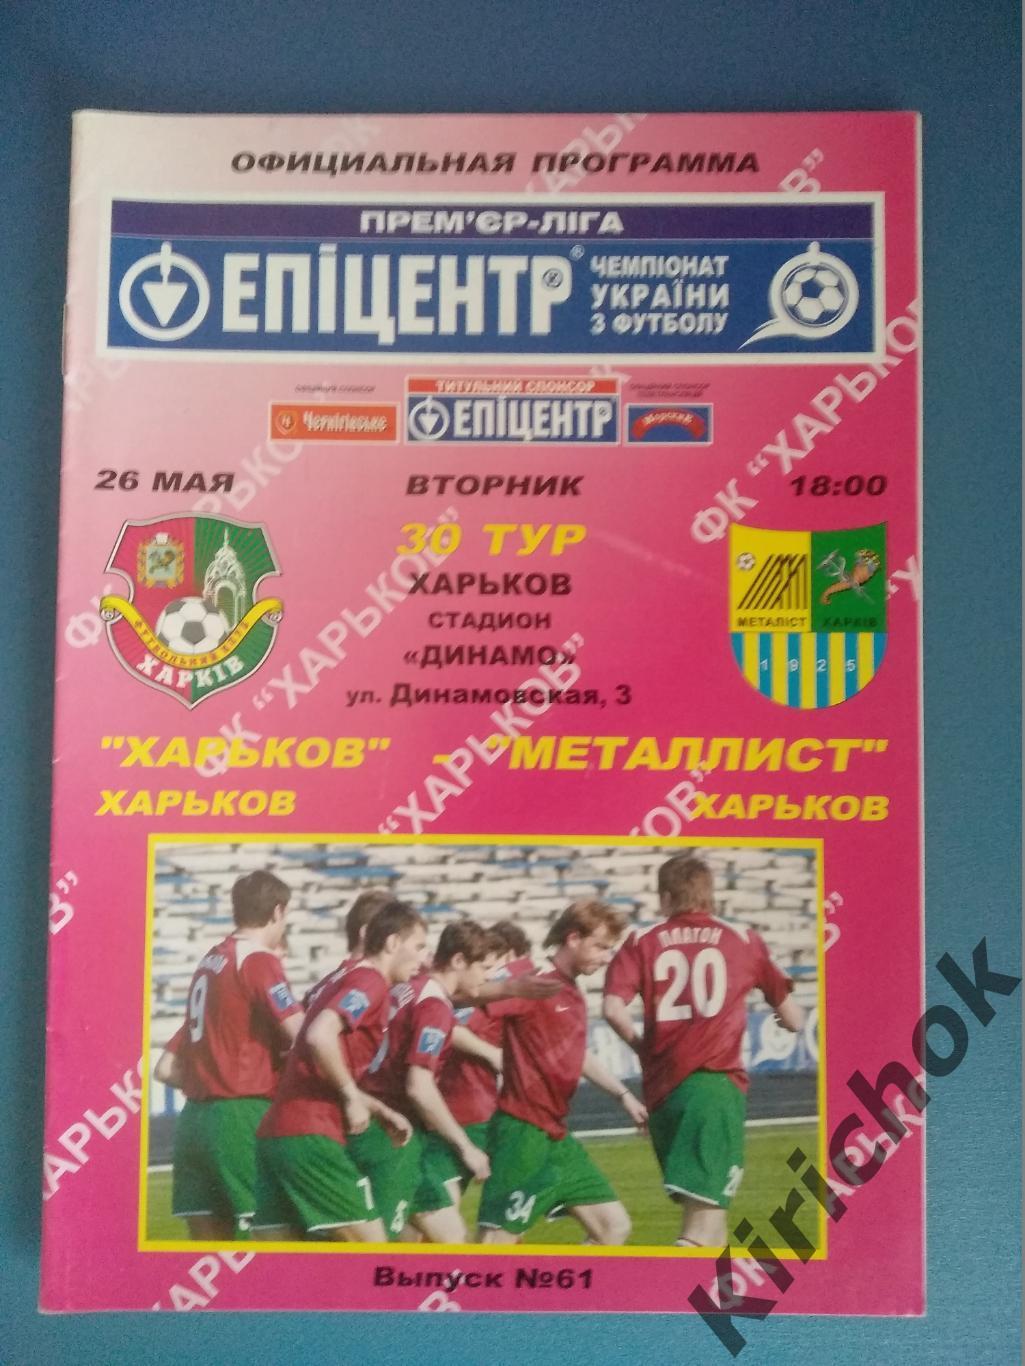 ФК Харьков Харьков - Металлист Харьков 2008/2009